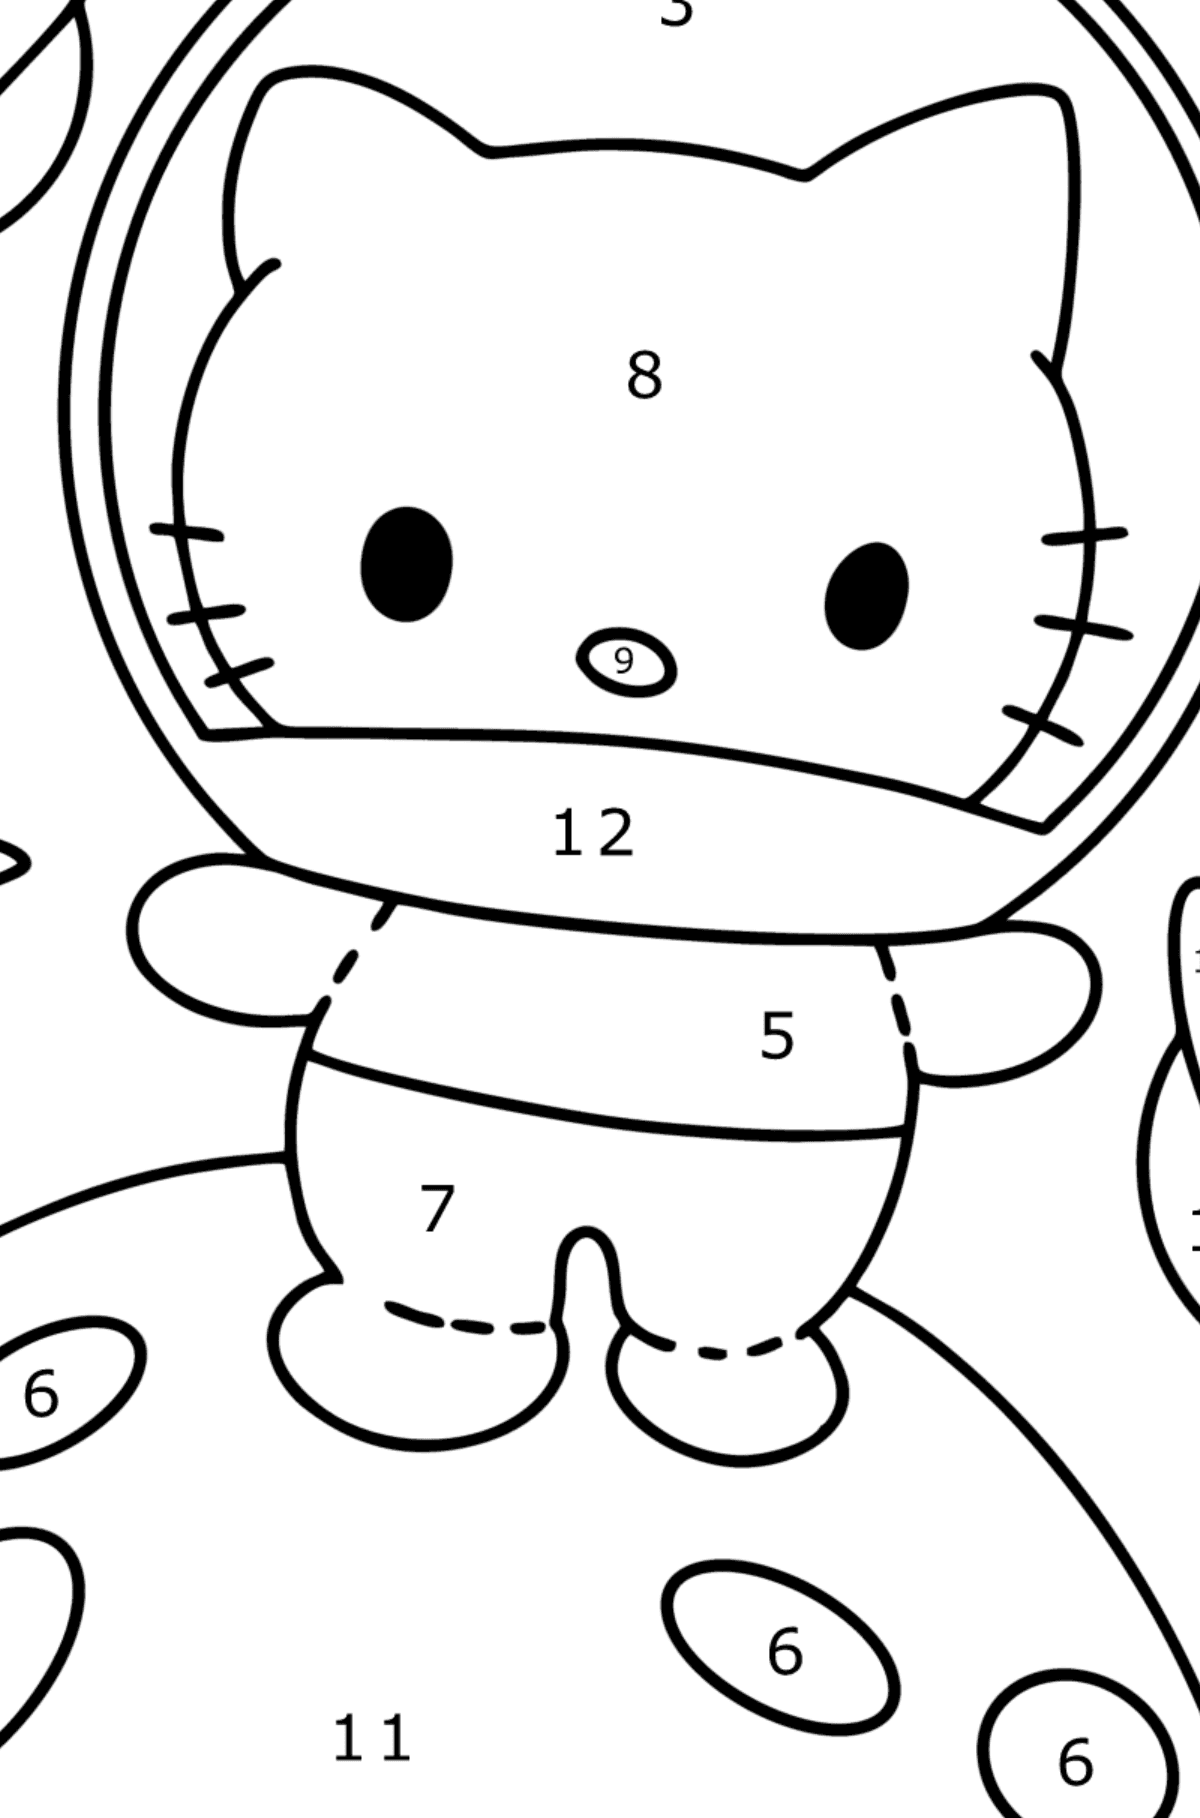 Boyama sayfası Hello Kitty astronot - Sayılarla Boyama çocuklar için